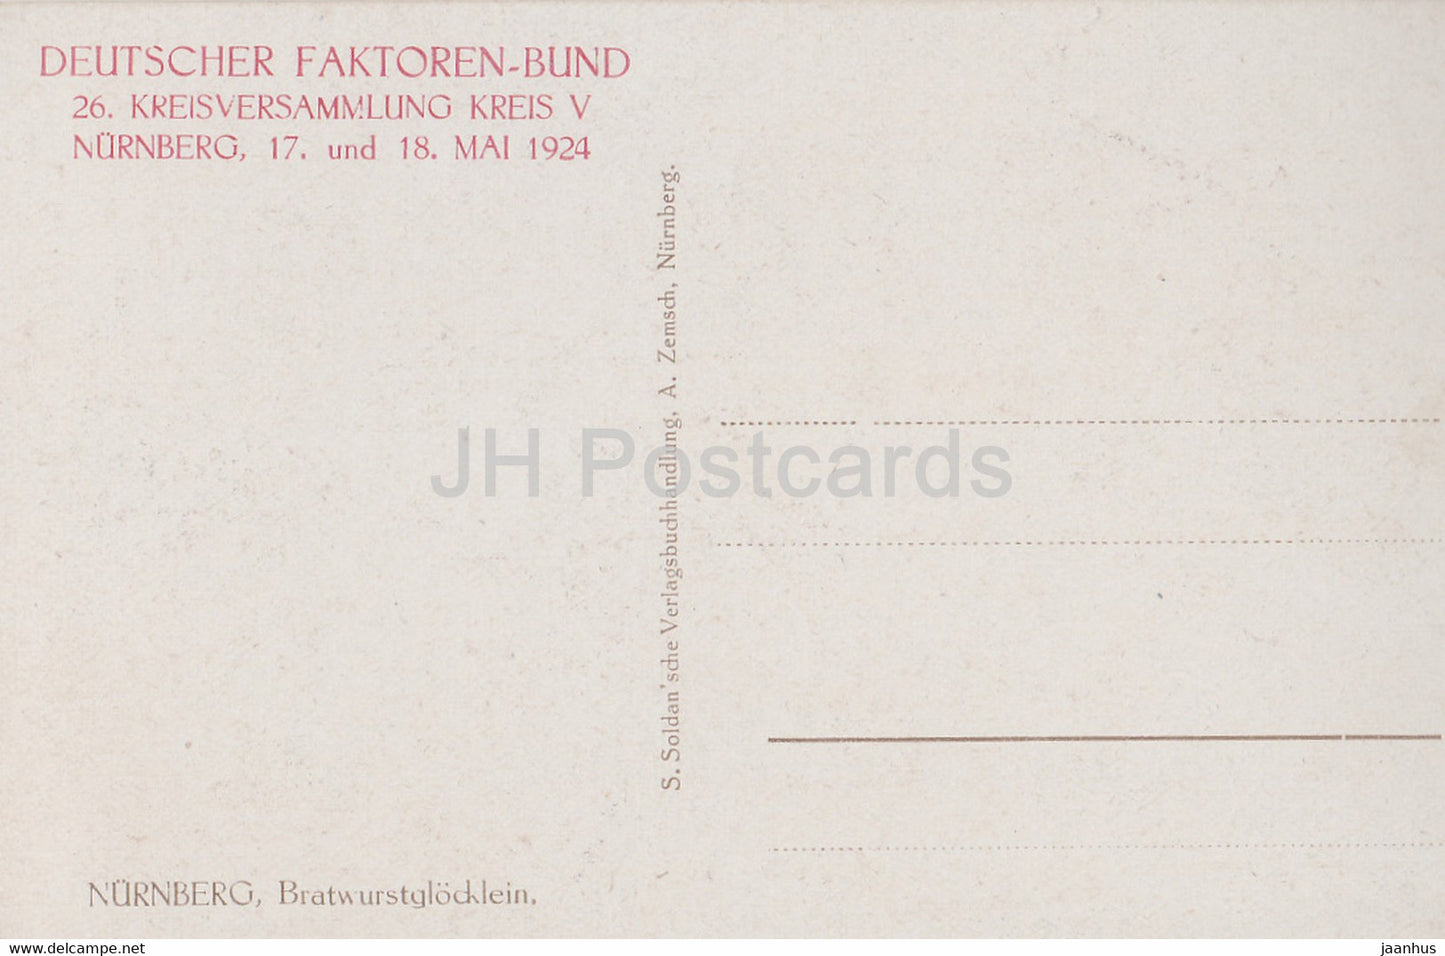 Nurnberg - Bratwurstglocklein - Deutscher Faktoren Bund 1924 - old postcard - Germany - unused